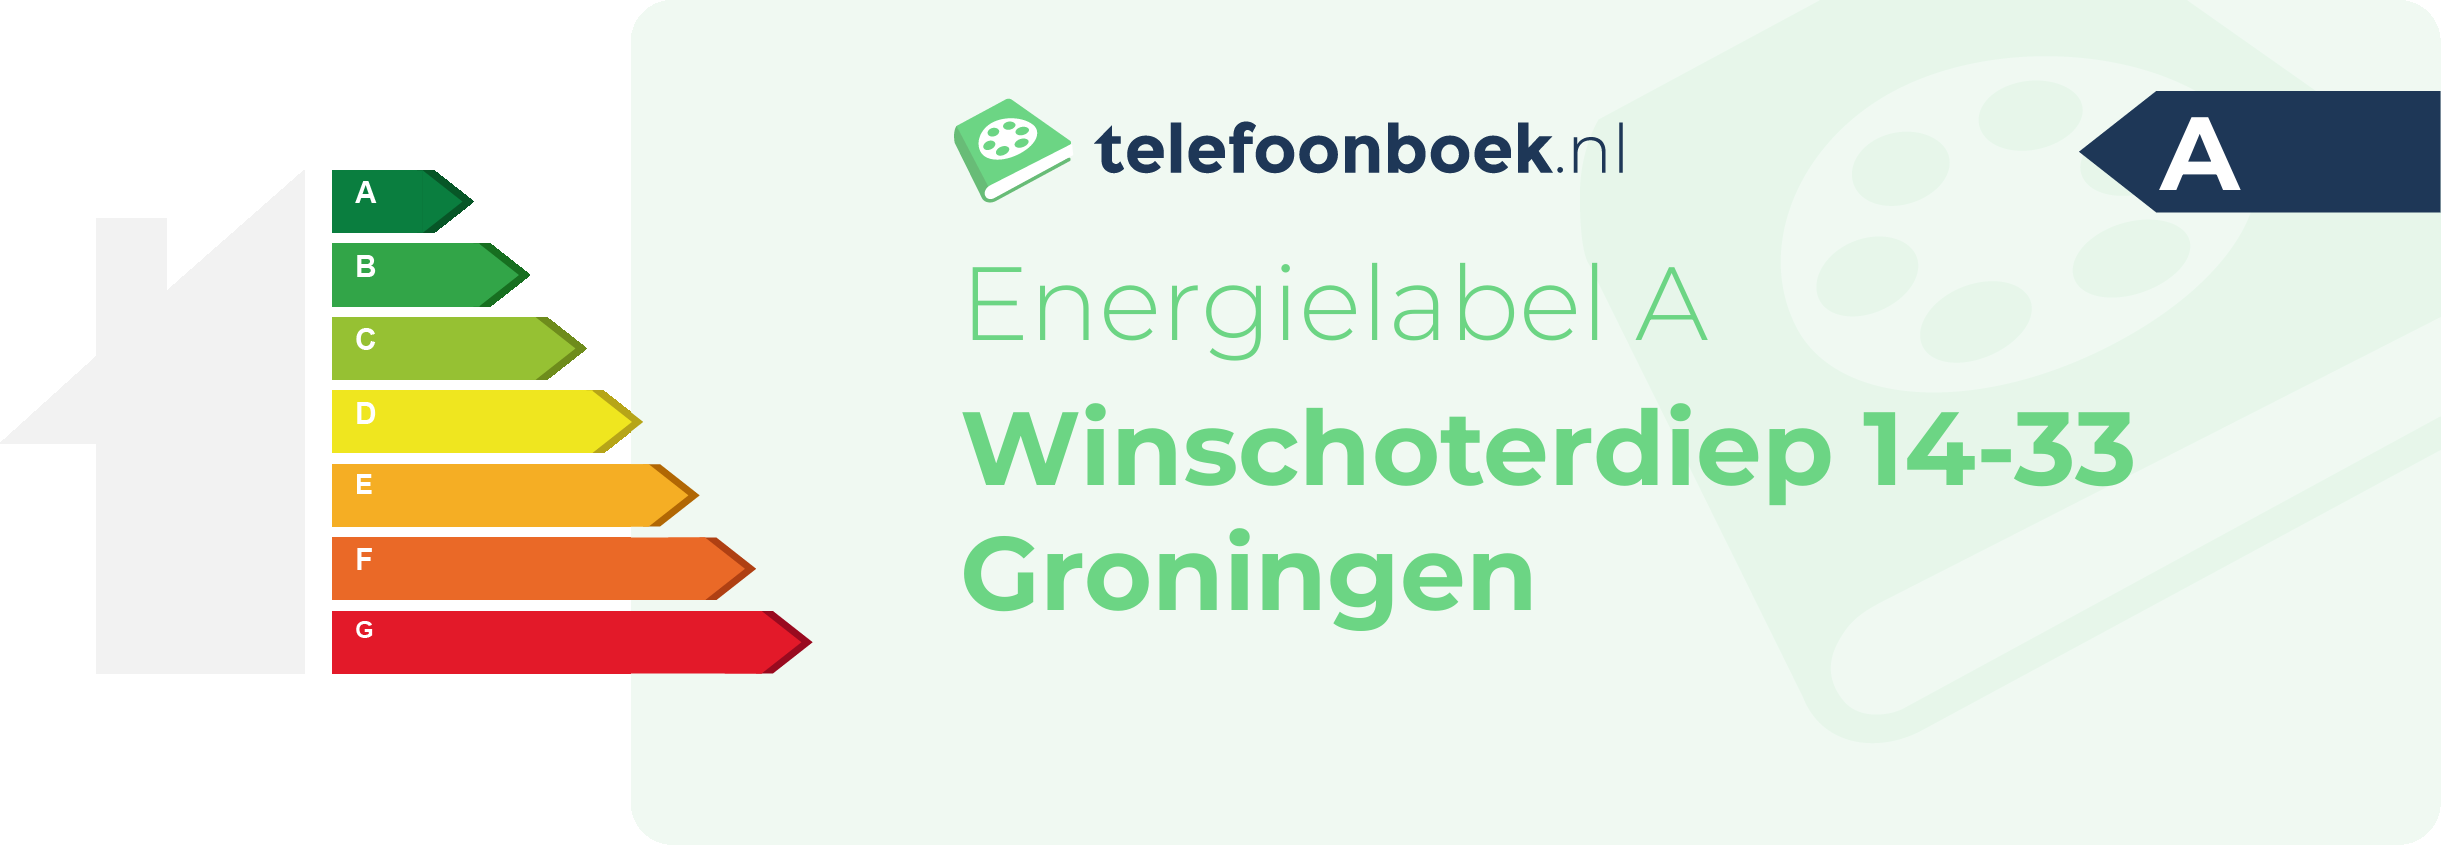 Energielabel Winschoterdiep 14-33 Groningen